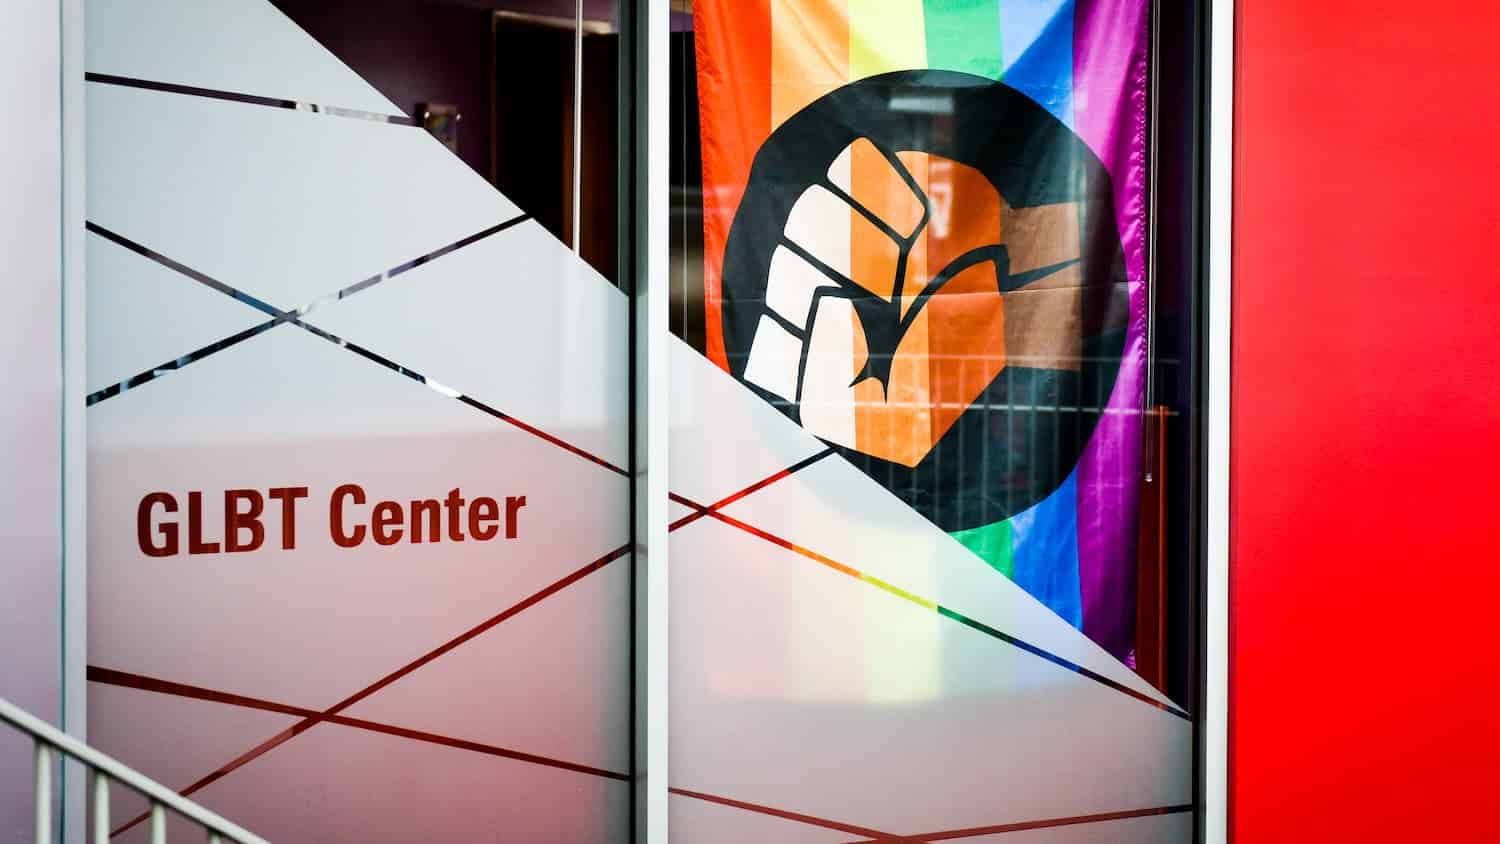 The GLBT Center entrance with a rainbow fist flag.